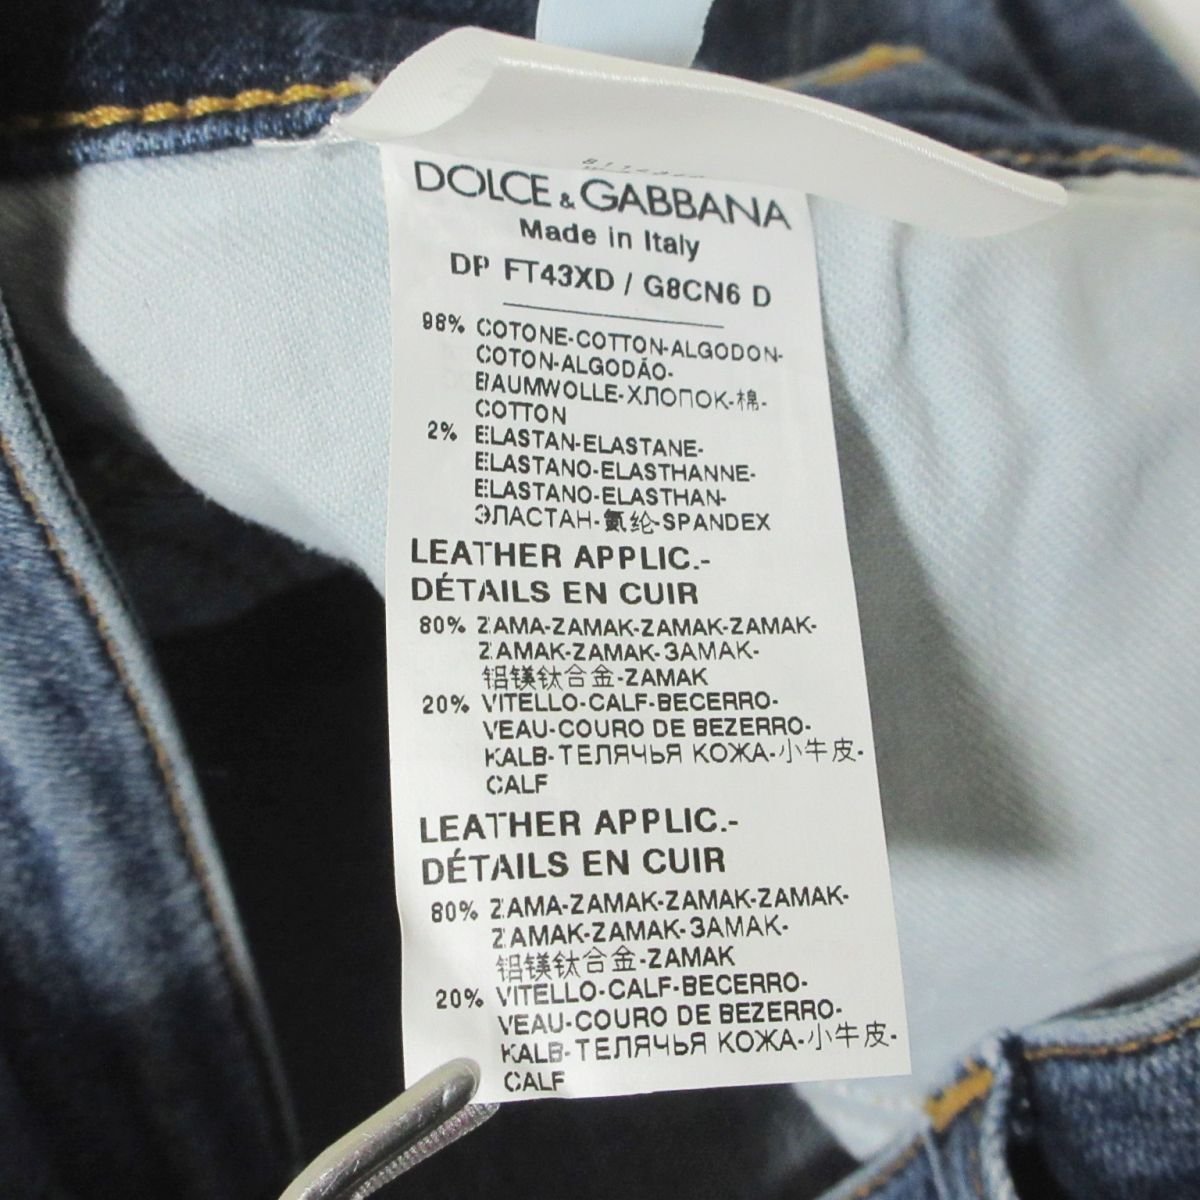  новый товар не использовался DOLCE&GABBANA Dolce & Gabbana повреждение обработка стрейч Denim брюки джинсы 36 индиго голубой 103